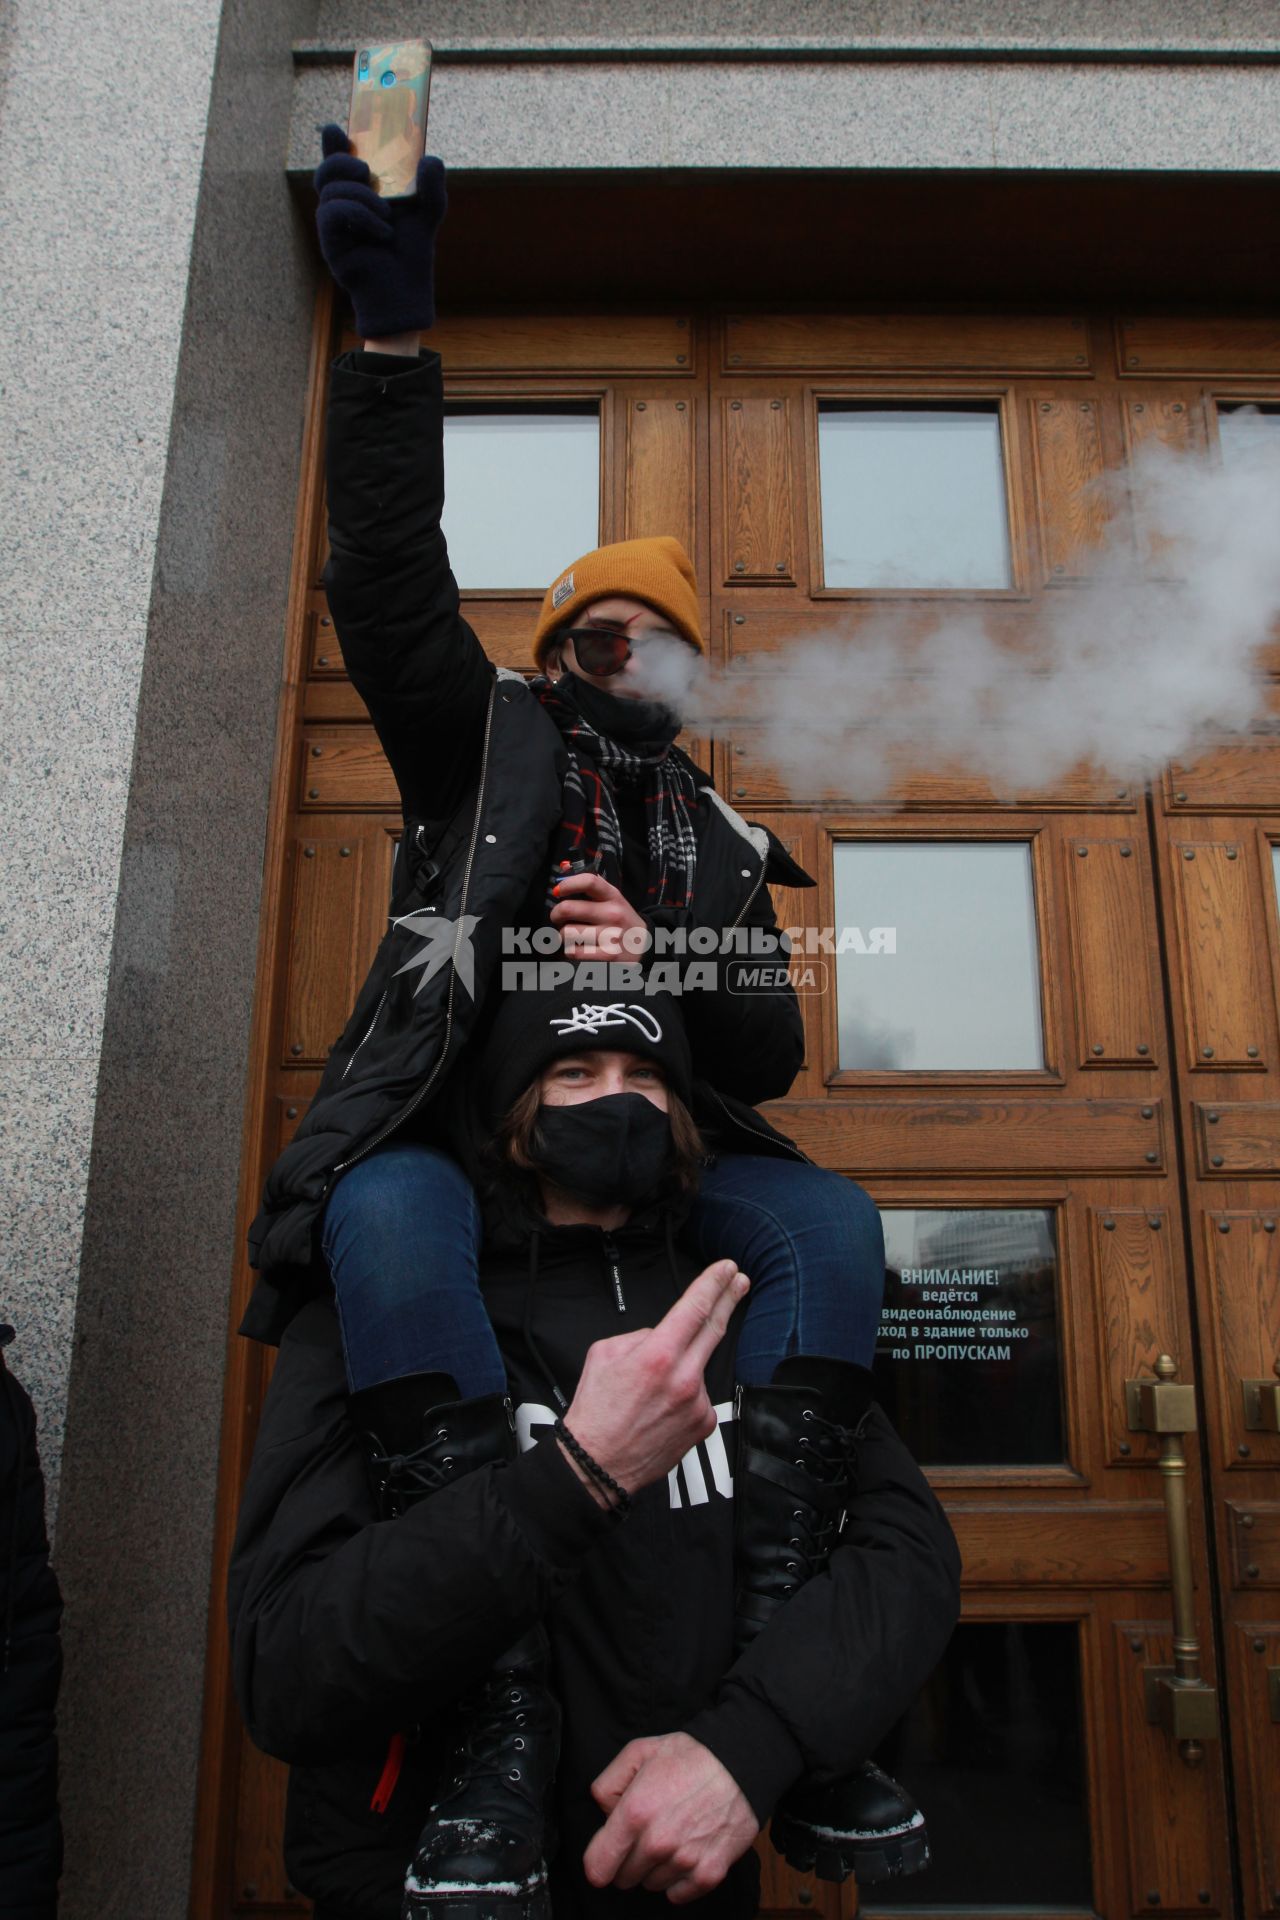 Иркутск. Участники несанкционированной акции в поддержку оппозиционера Алексея Навального у здания Иркутской областной администрации.